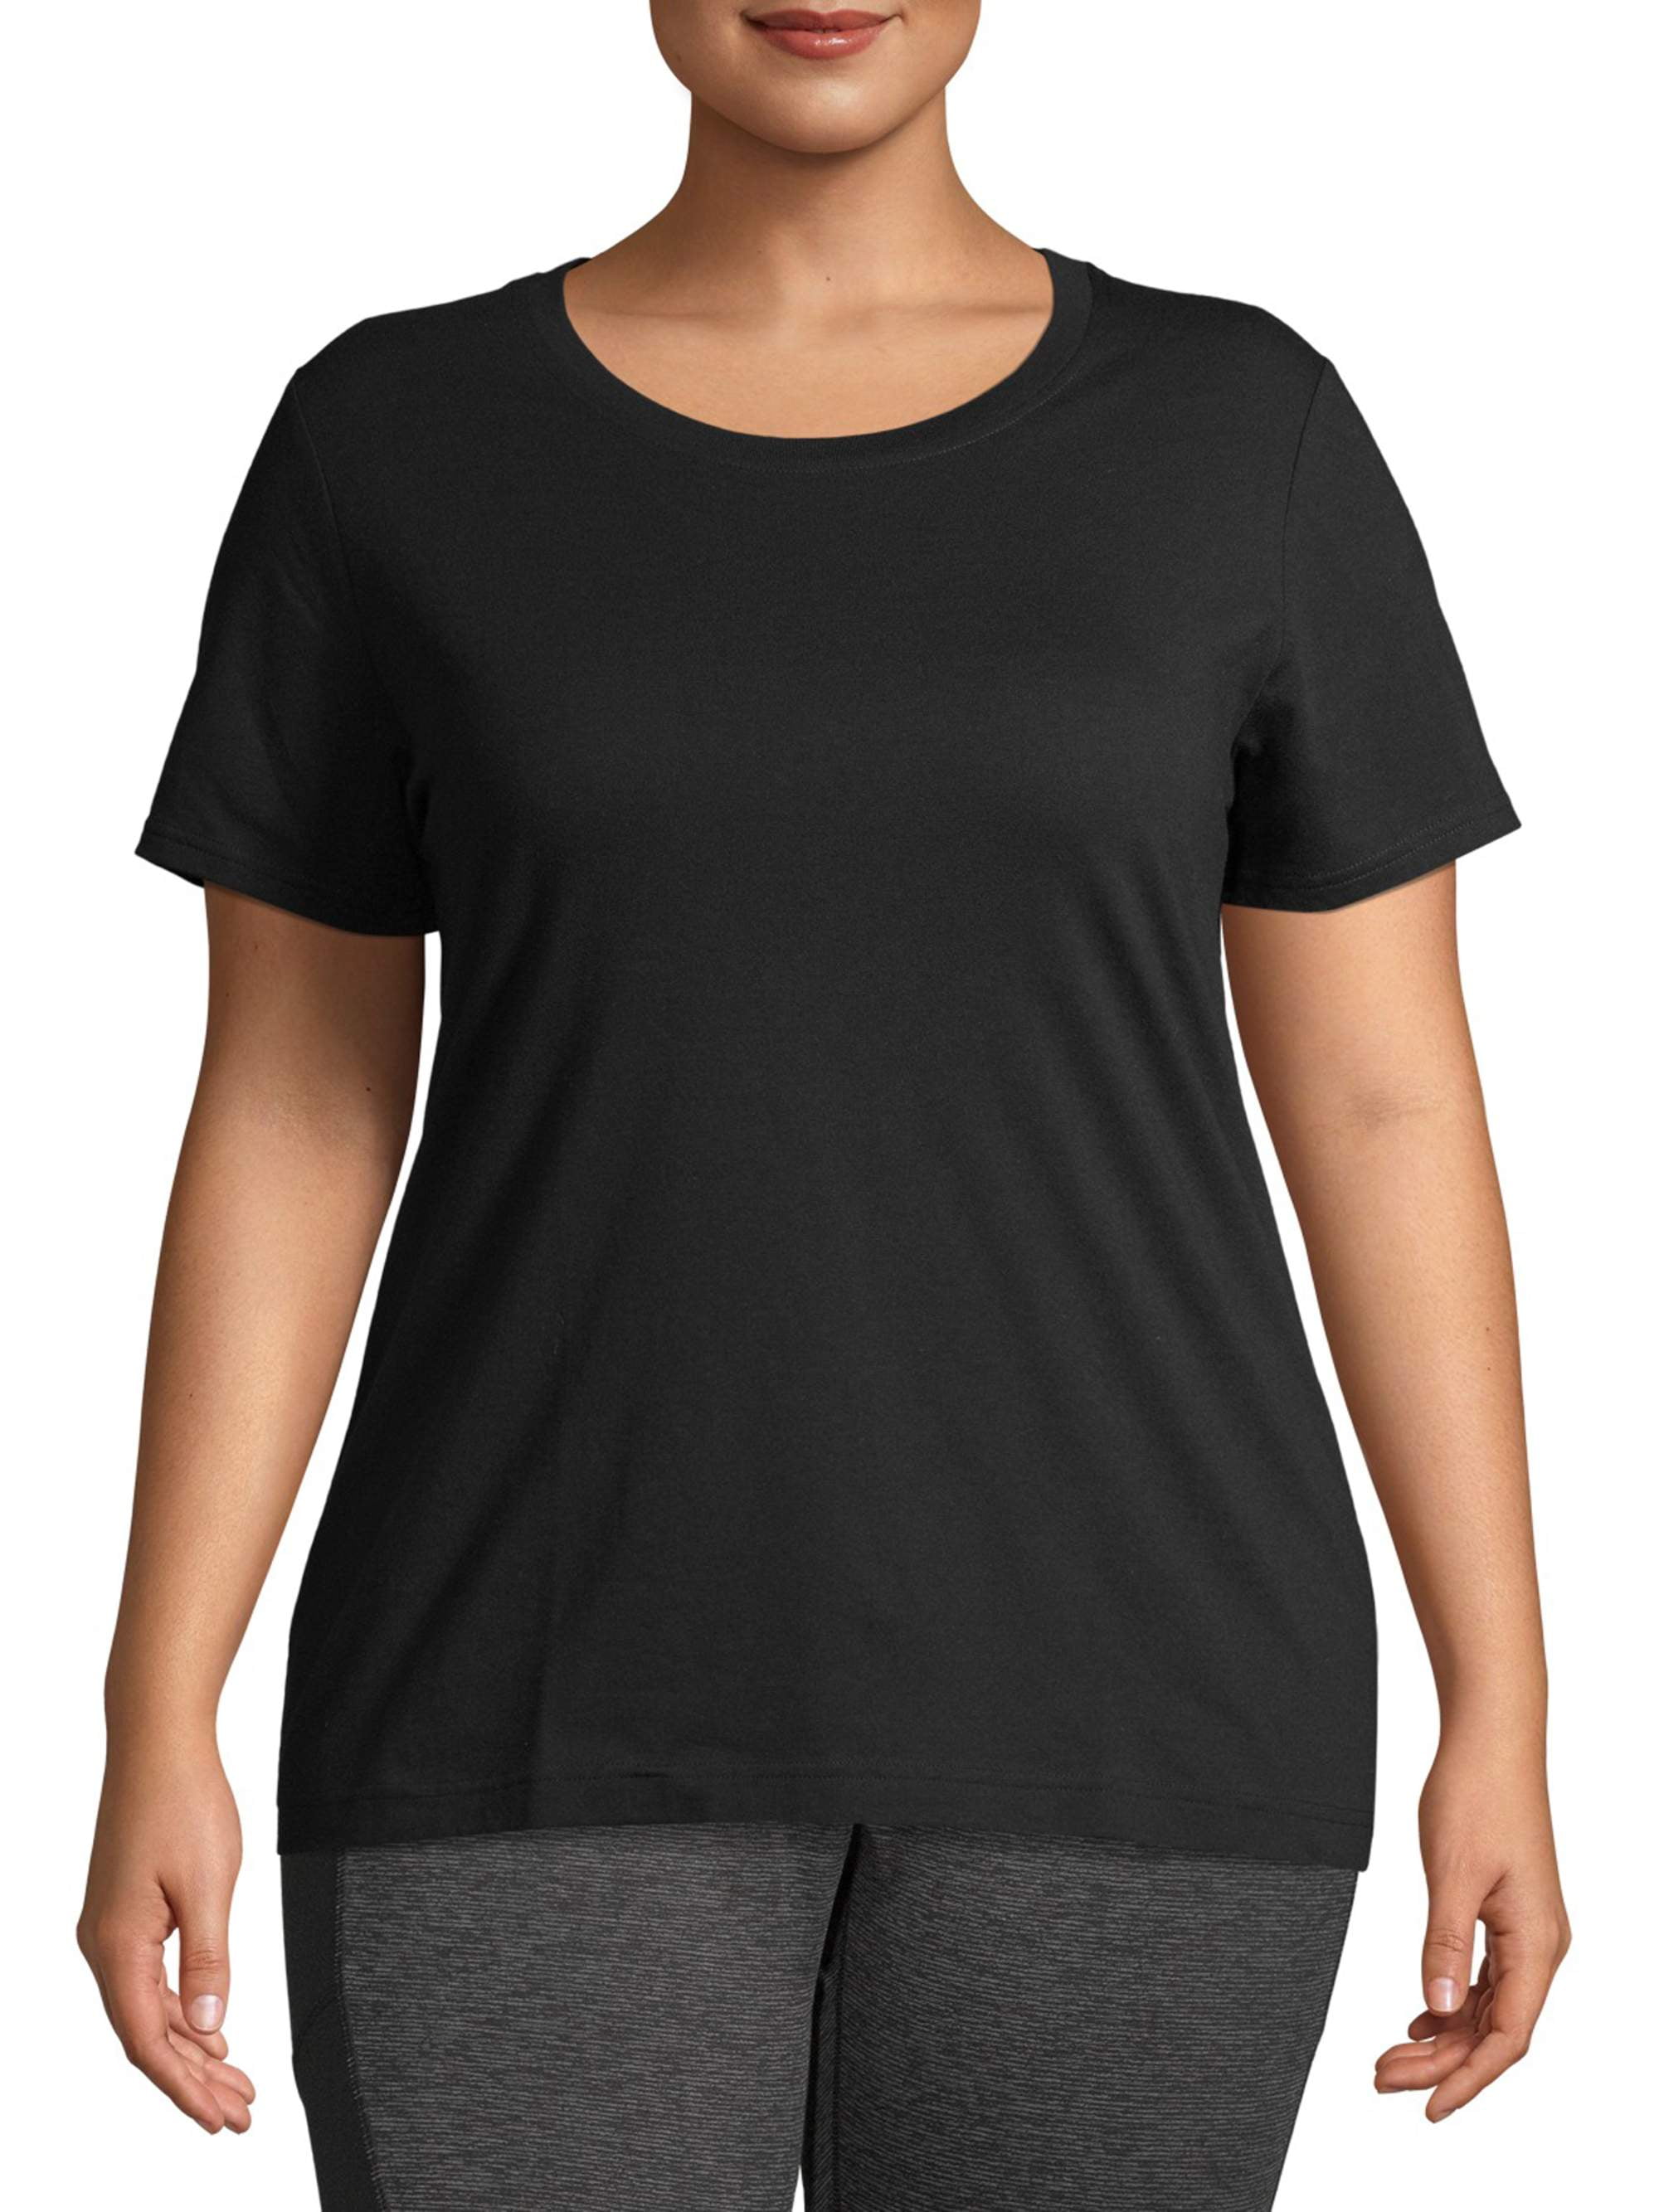 Athletic Works Women's Plus Size Core Crewneck Short Sleeve T-Shirt ...